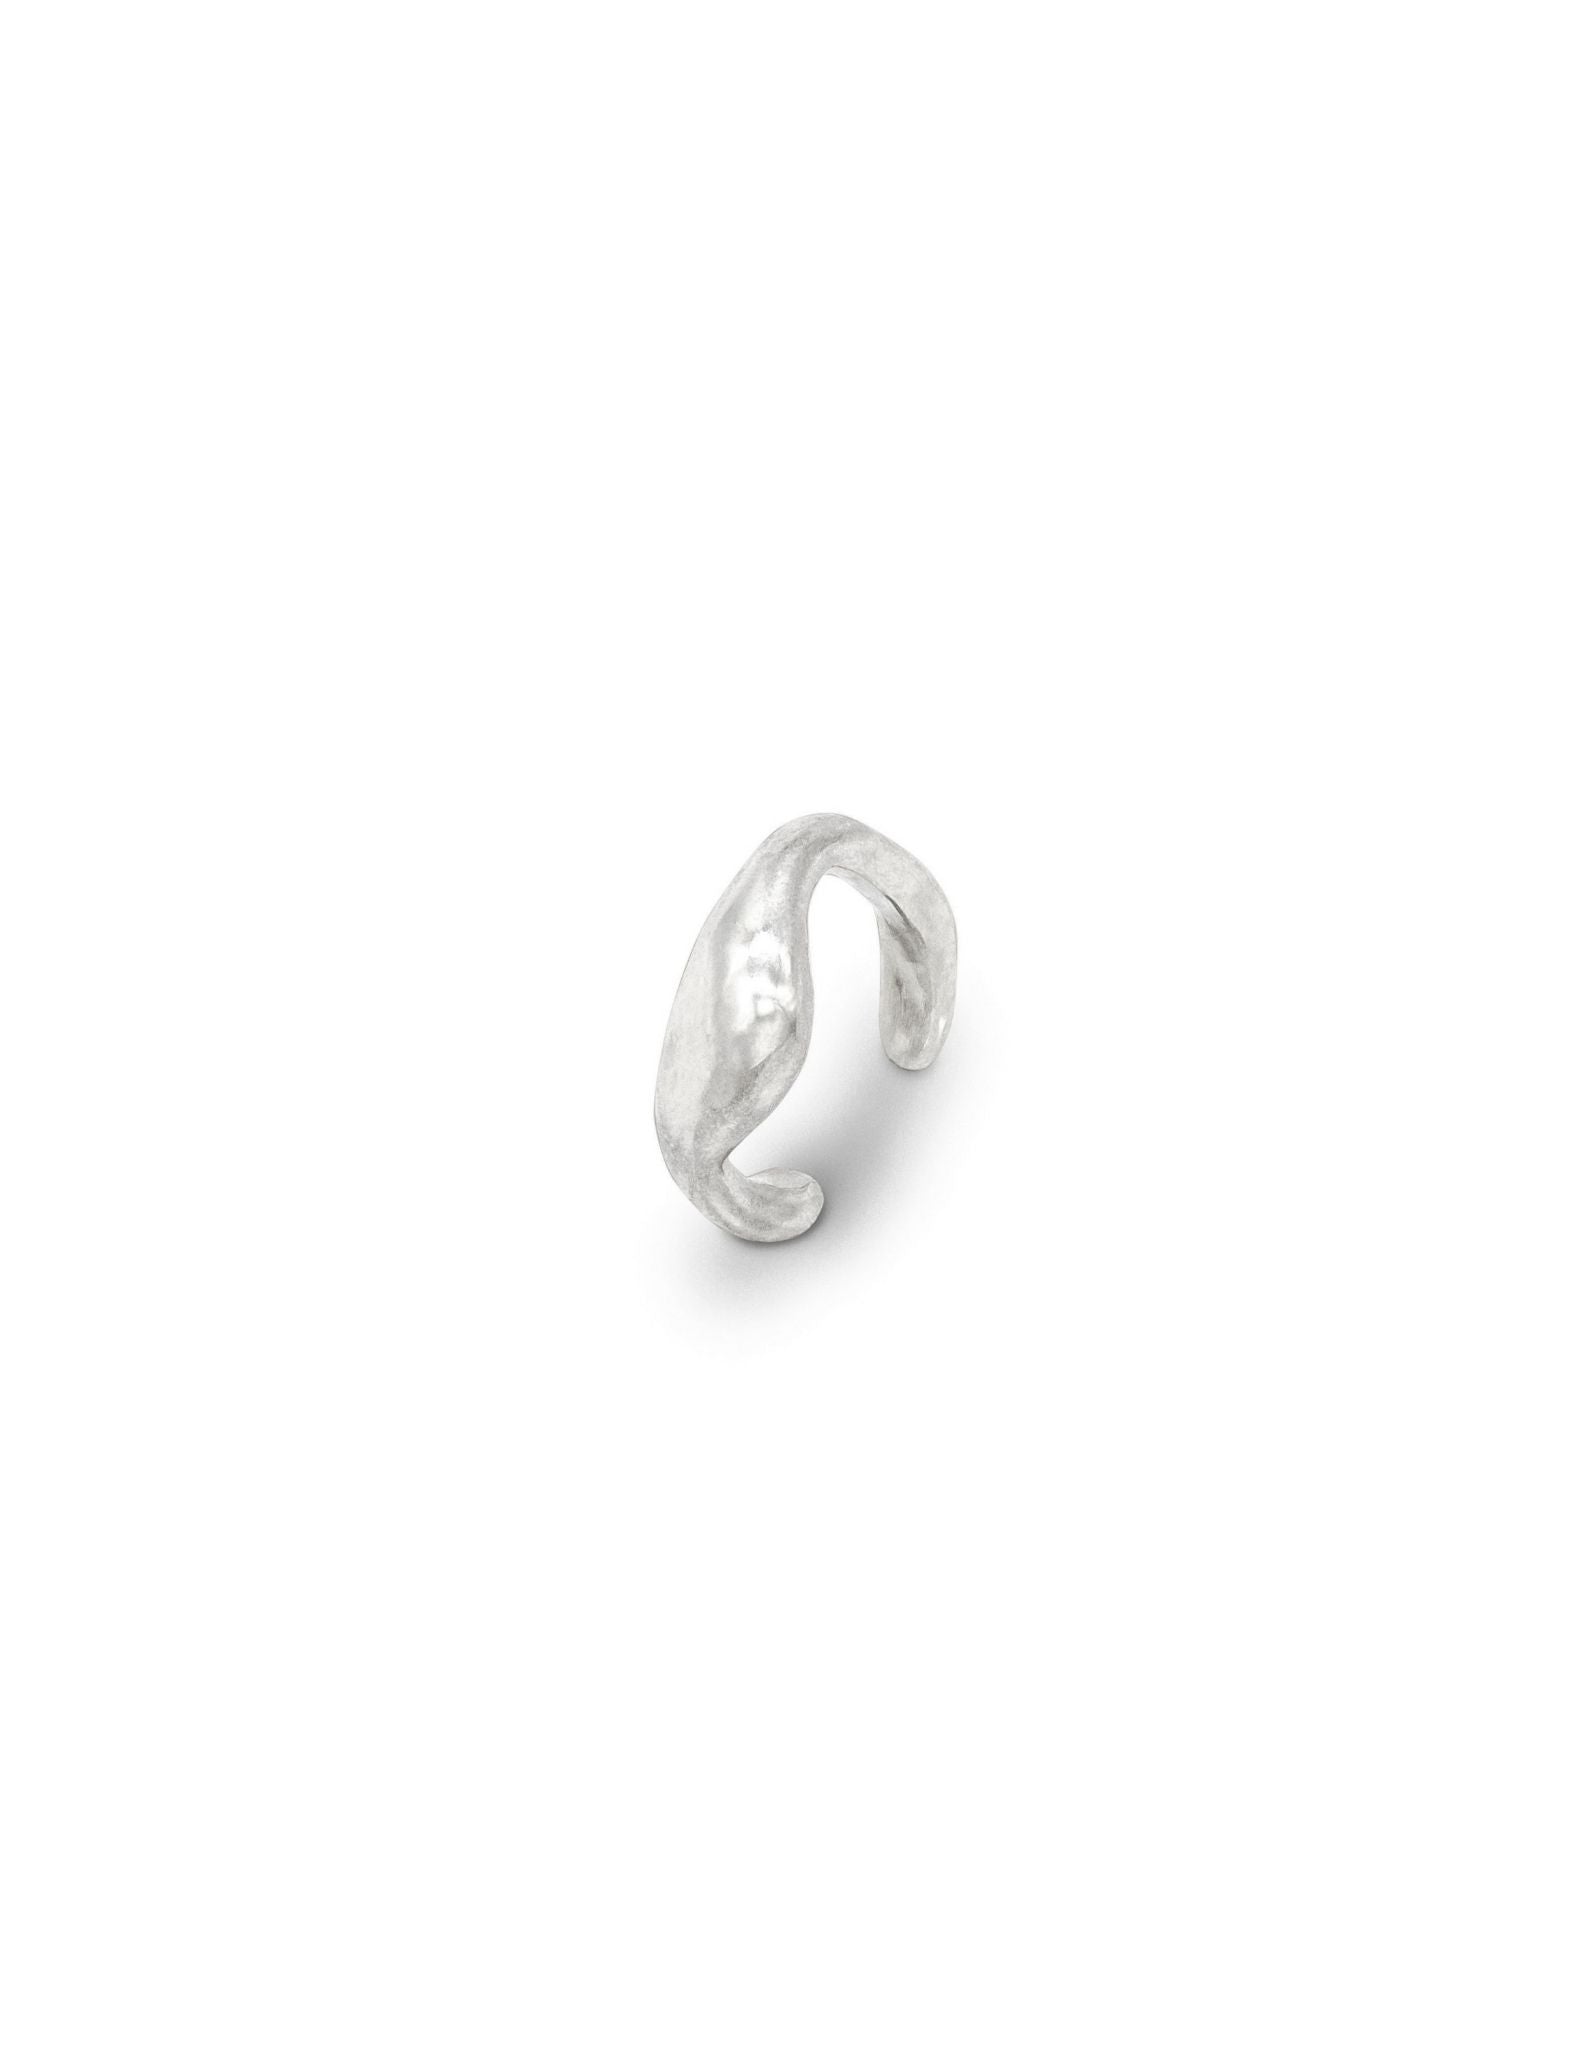 Kharys jewelry organic shaped drip ear cuff in 925 sterling silver